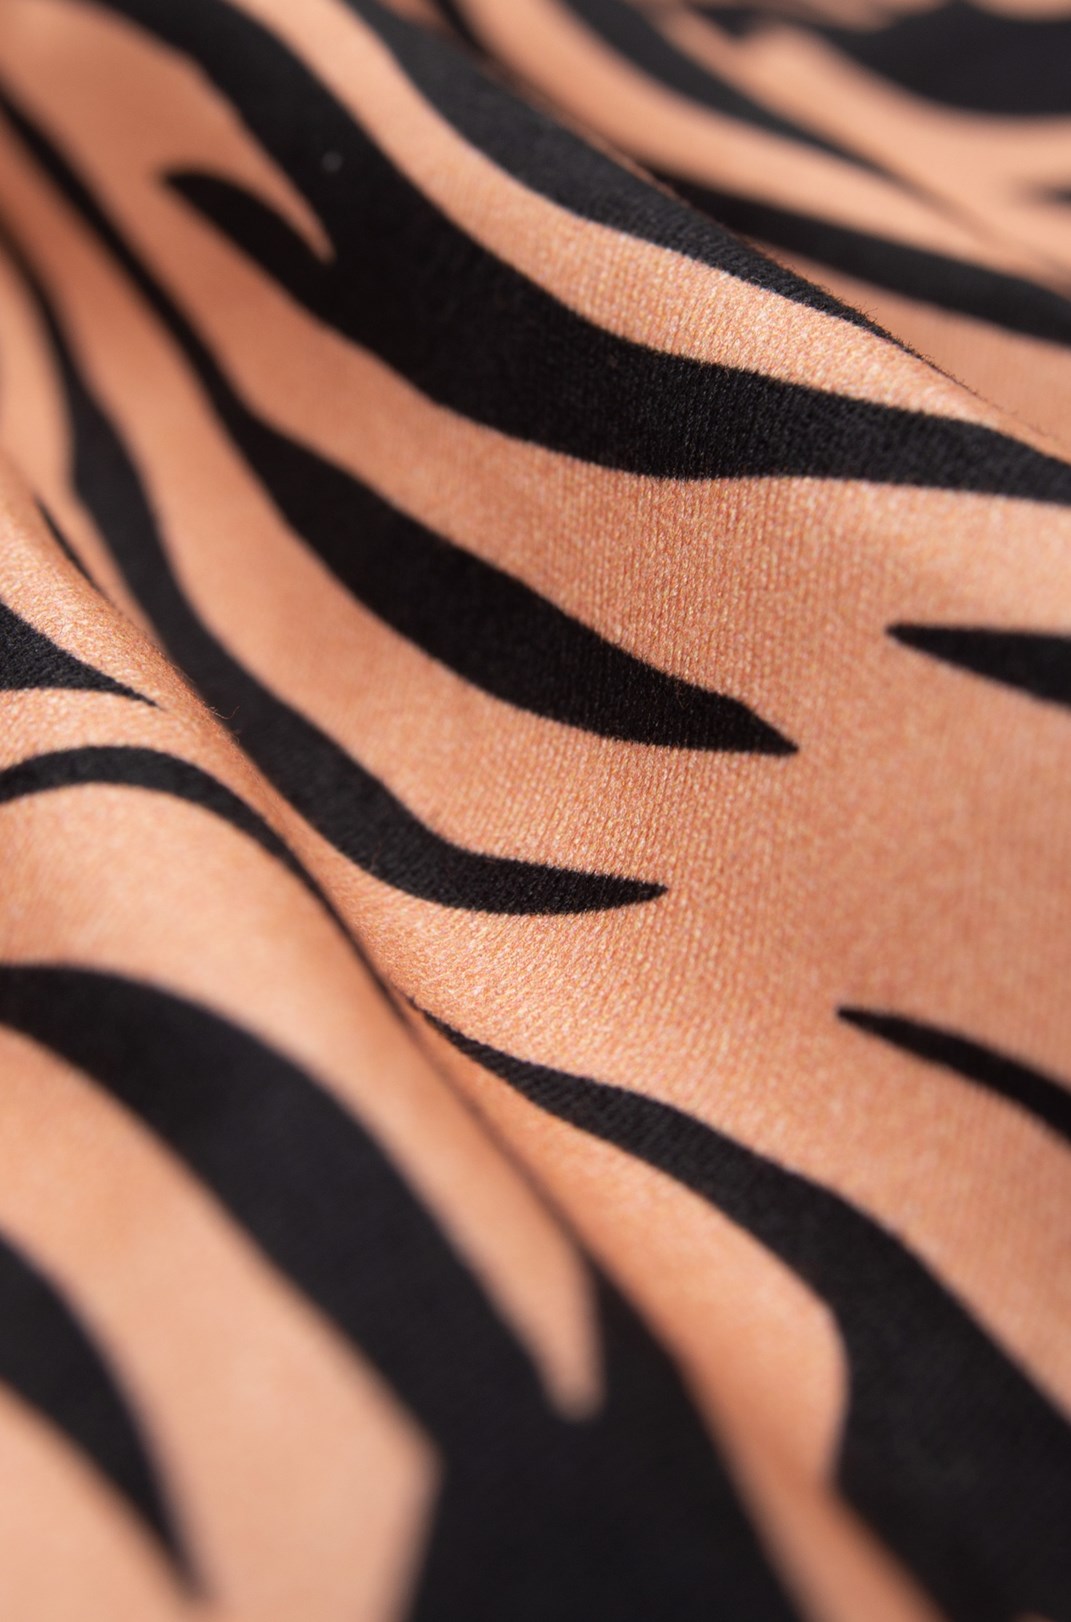 Shorts Sarja Approve Animal Print Tigre Laranja